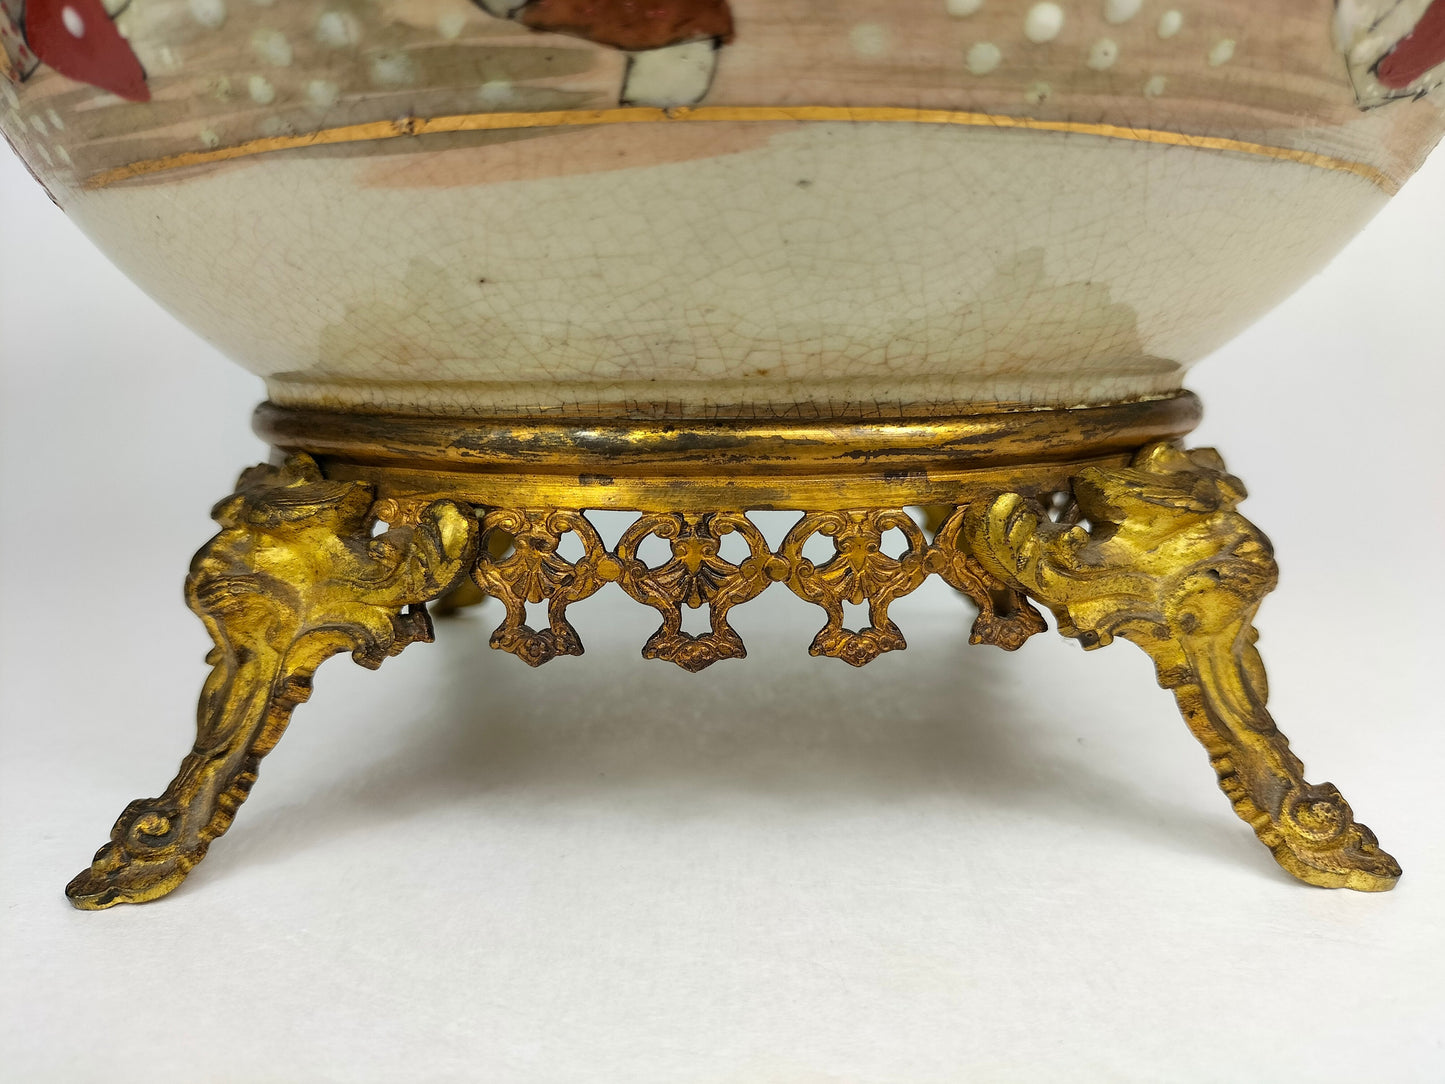 镶有镀金黄铜的古董日本萨摩花瓶 // 明治时期 - 19 世纪